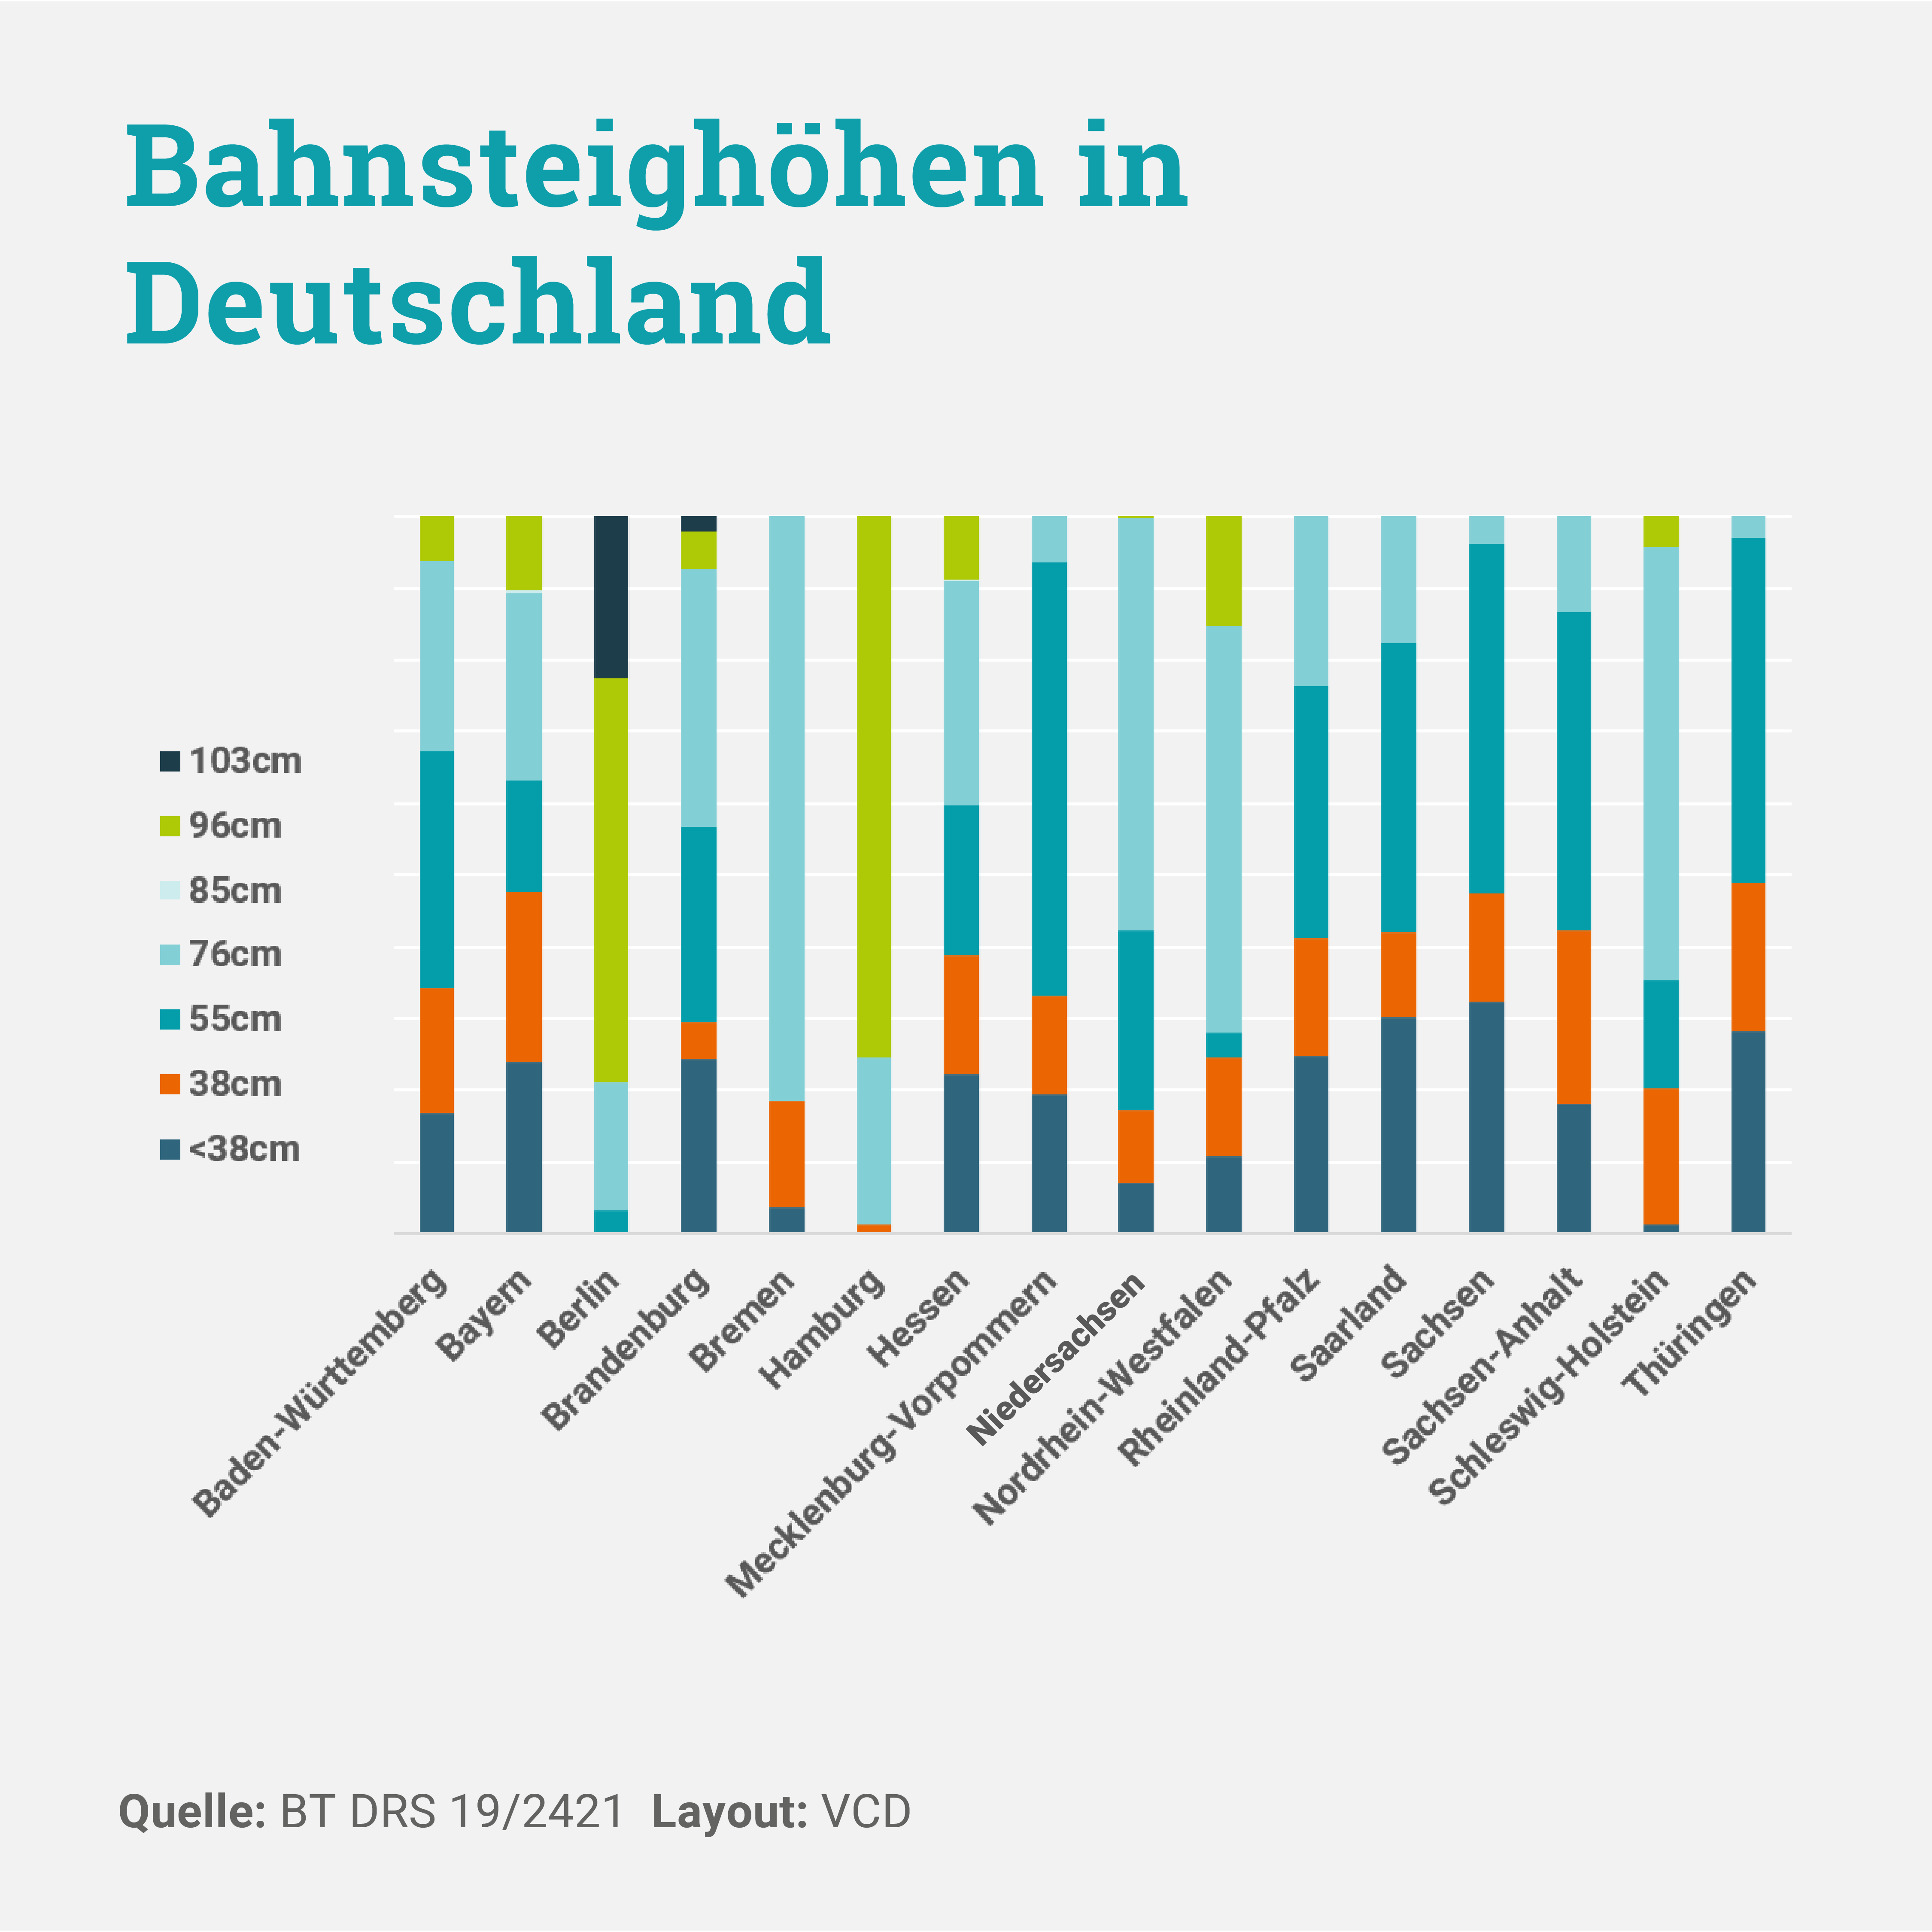 Die Grafik zeigt an, welche Bahnsteighöhen in den deutschen Bundesländern zu wieviel Prozent vorzufinden sind. Die Grafik macht anschaulich, dass die Bahnsteighöhen deutschlandweit sehr uneinheitlich sind.